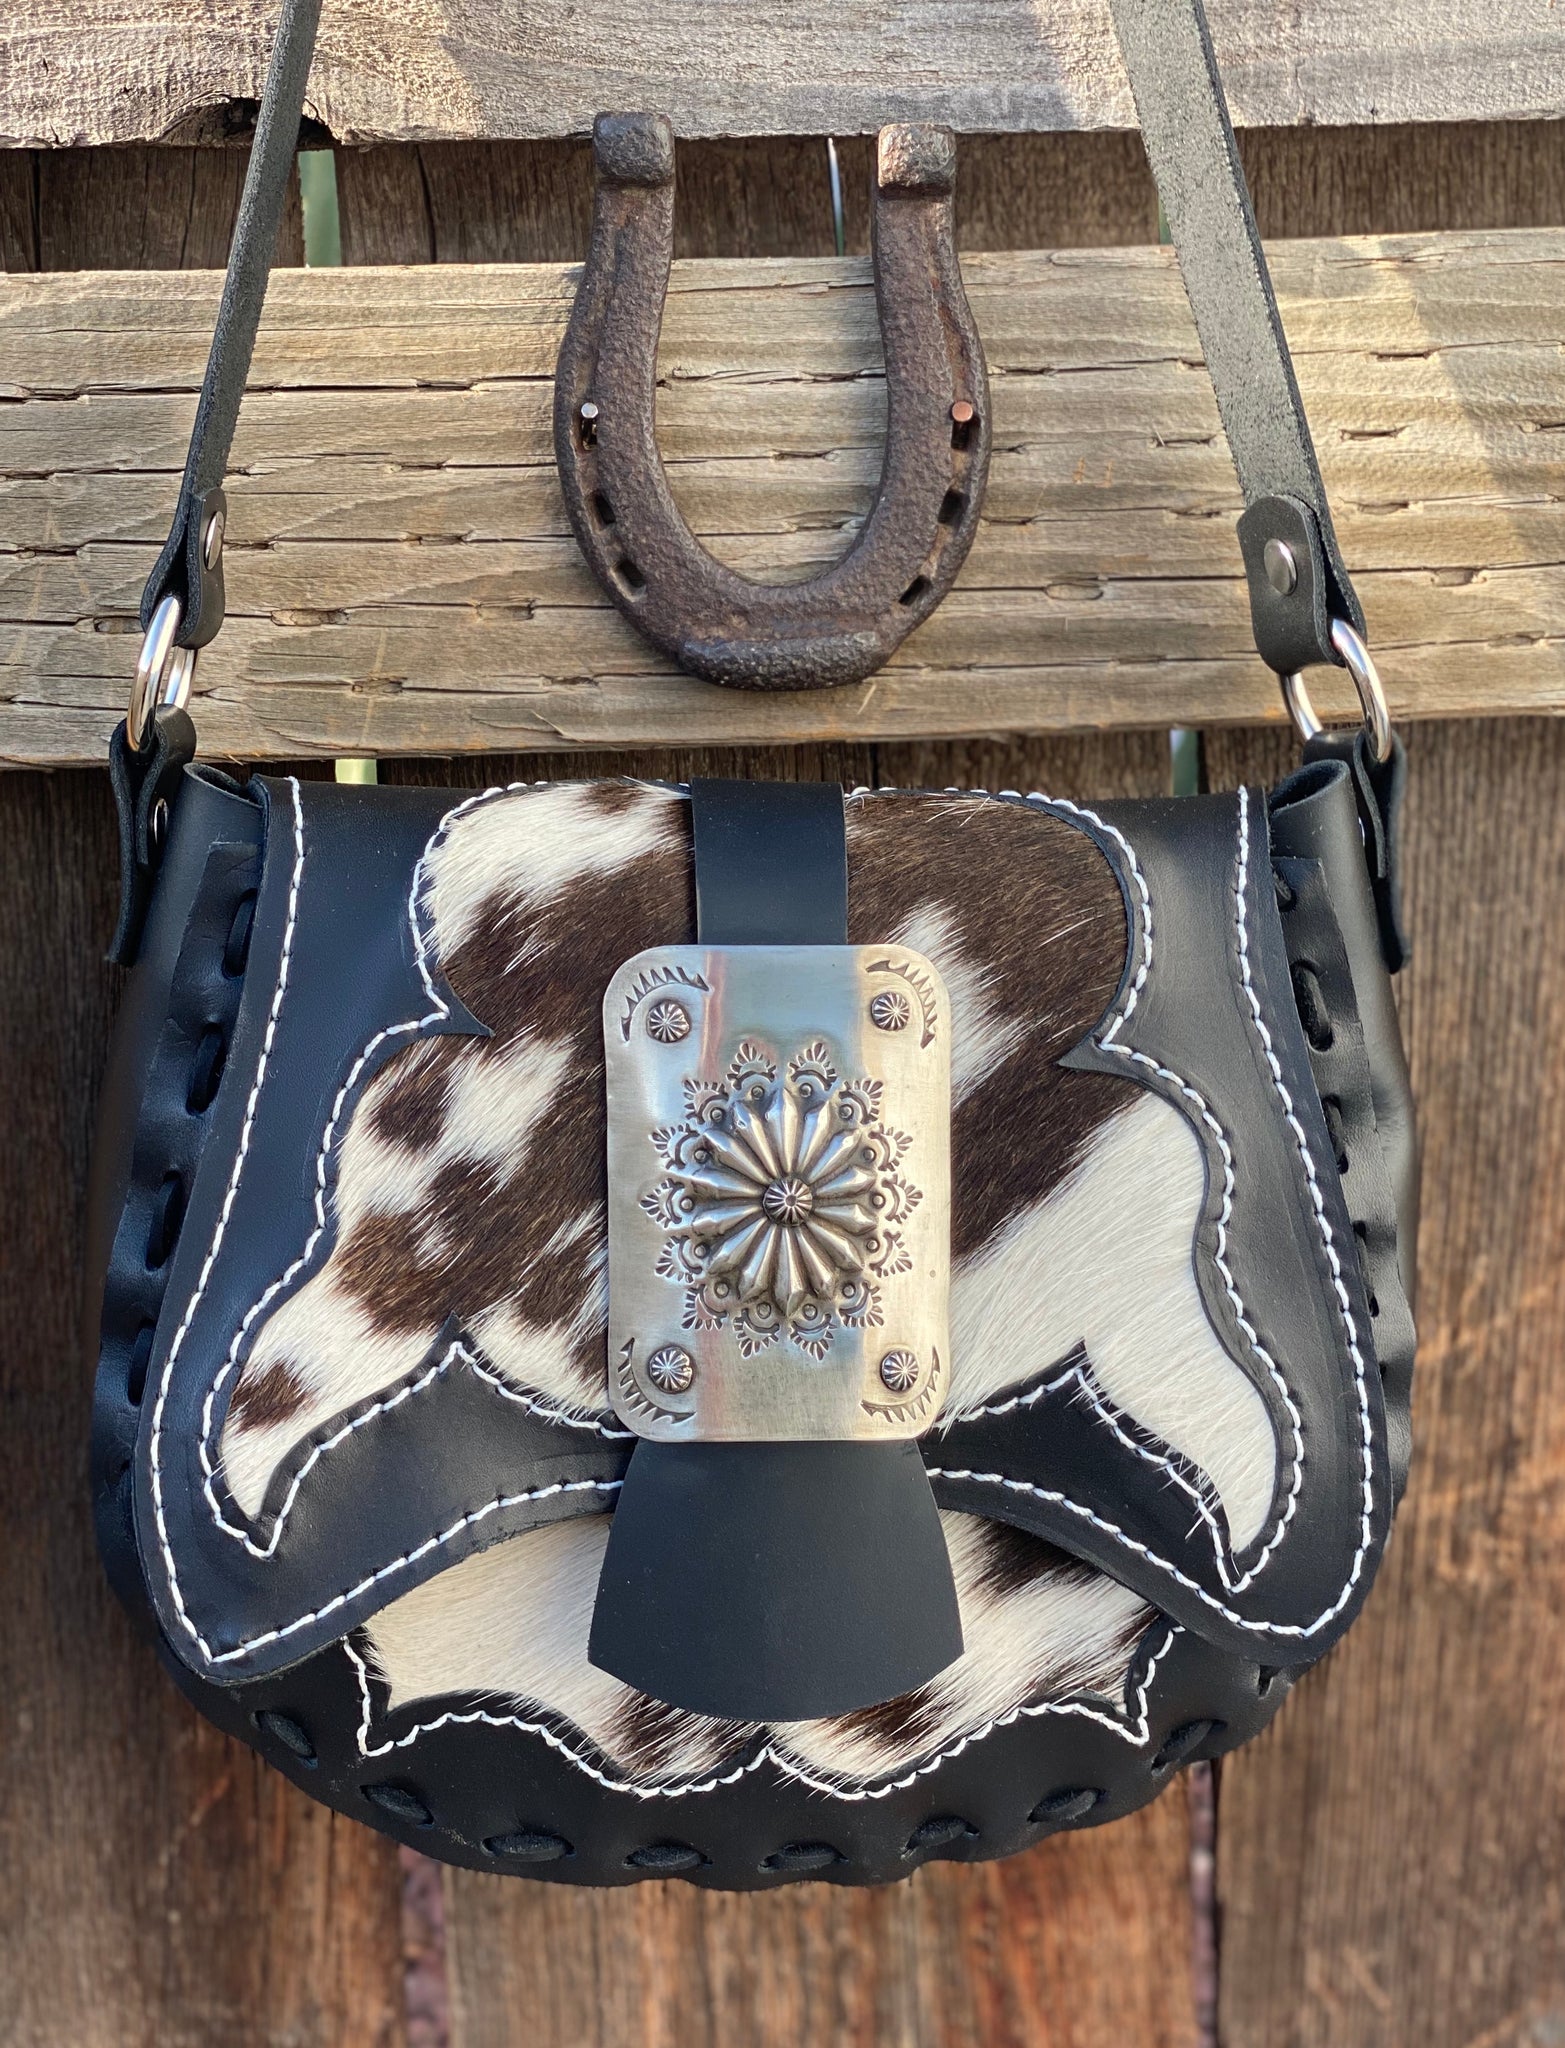 The Eldorado purse